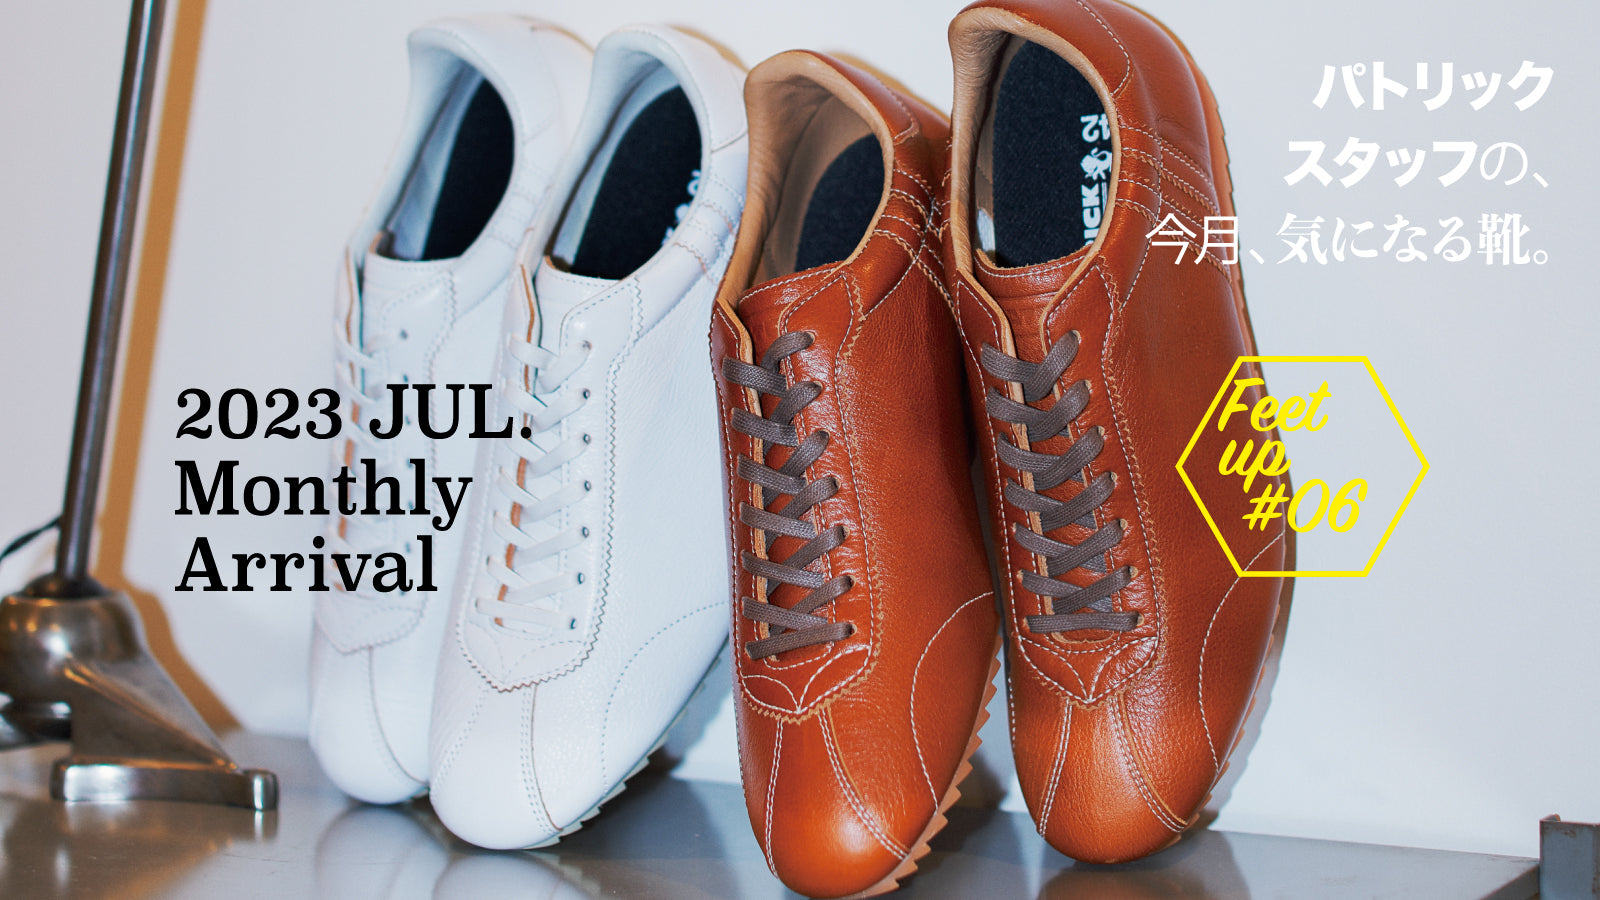 パトリックスタッフの、今月、気になる靴MonthlyArrival 2023 Jul